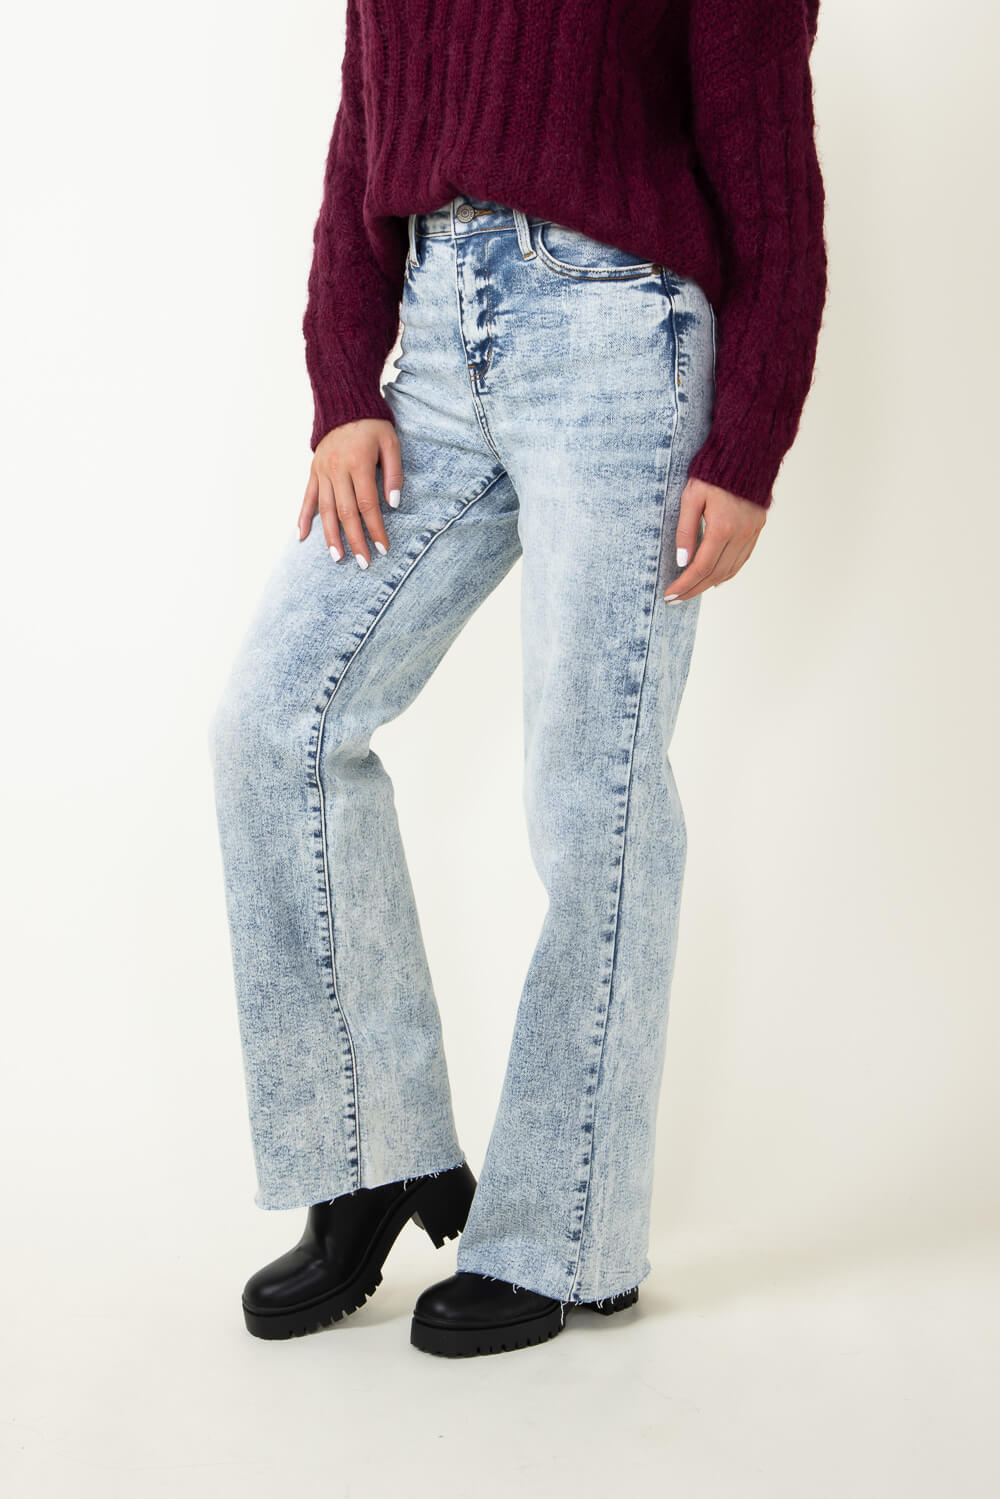 Wide Leg Jeans For Women